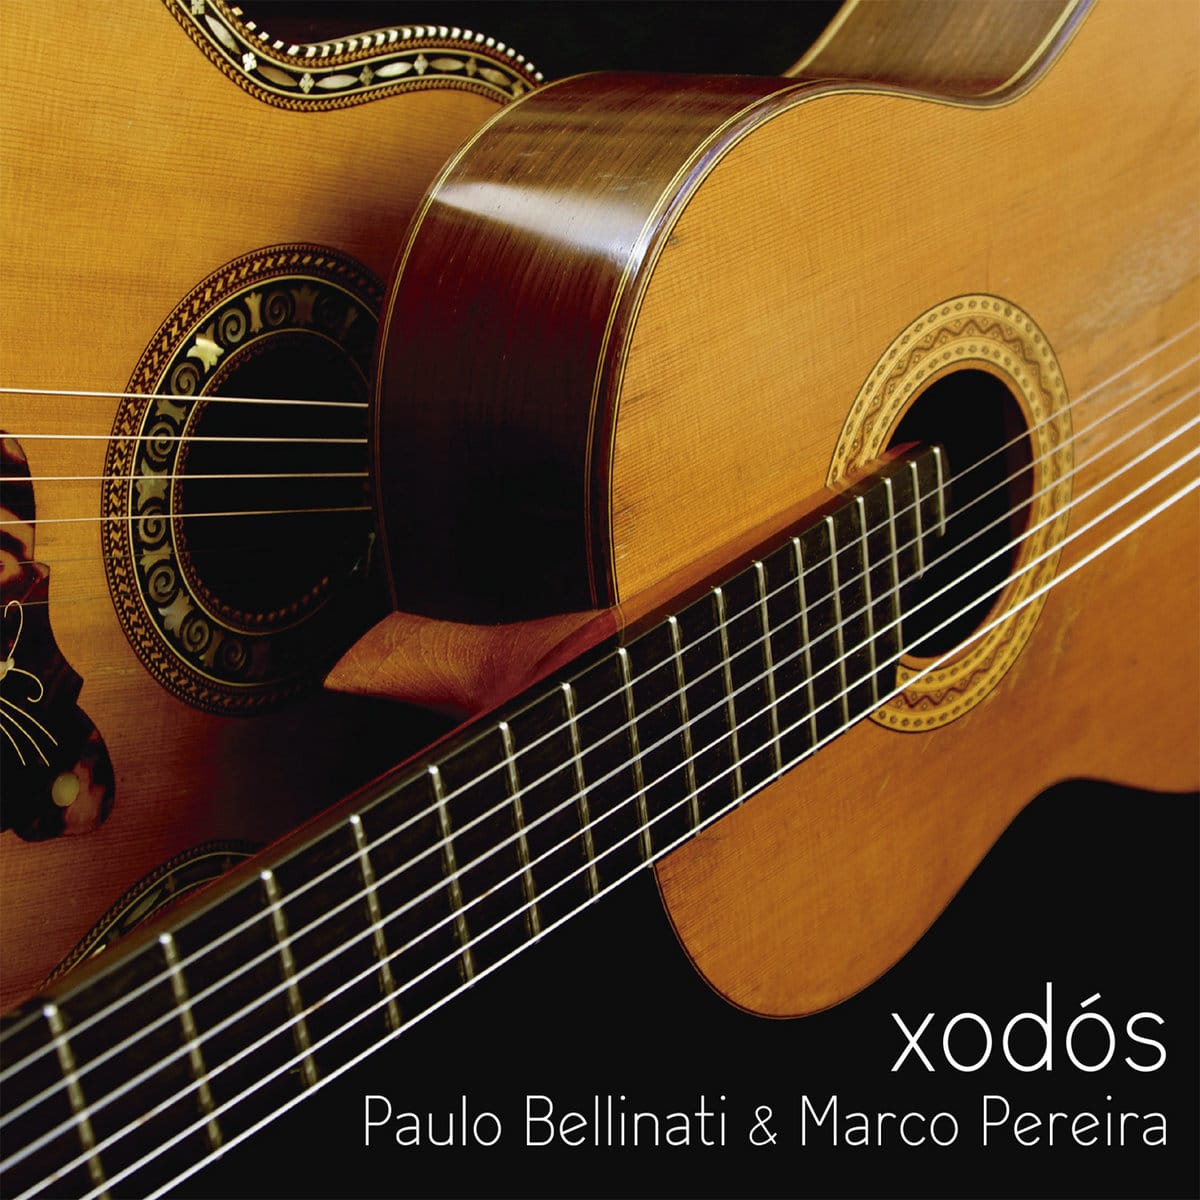 revistaprosaversoearte.com - 'Xodós', álbum de Paulo Bellinati e Marco Pereira